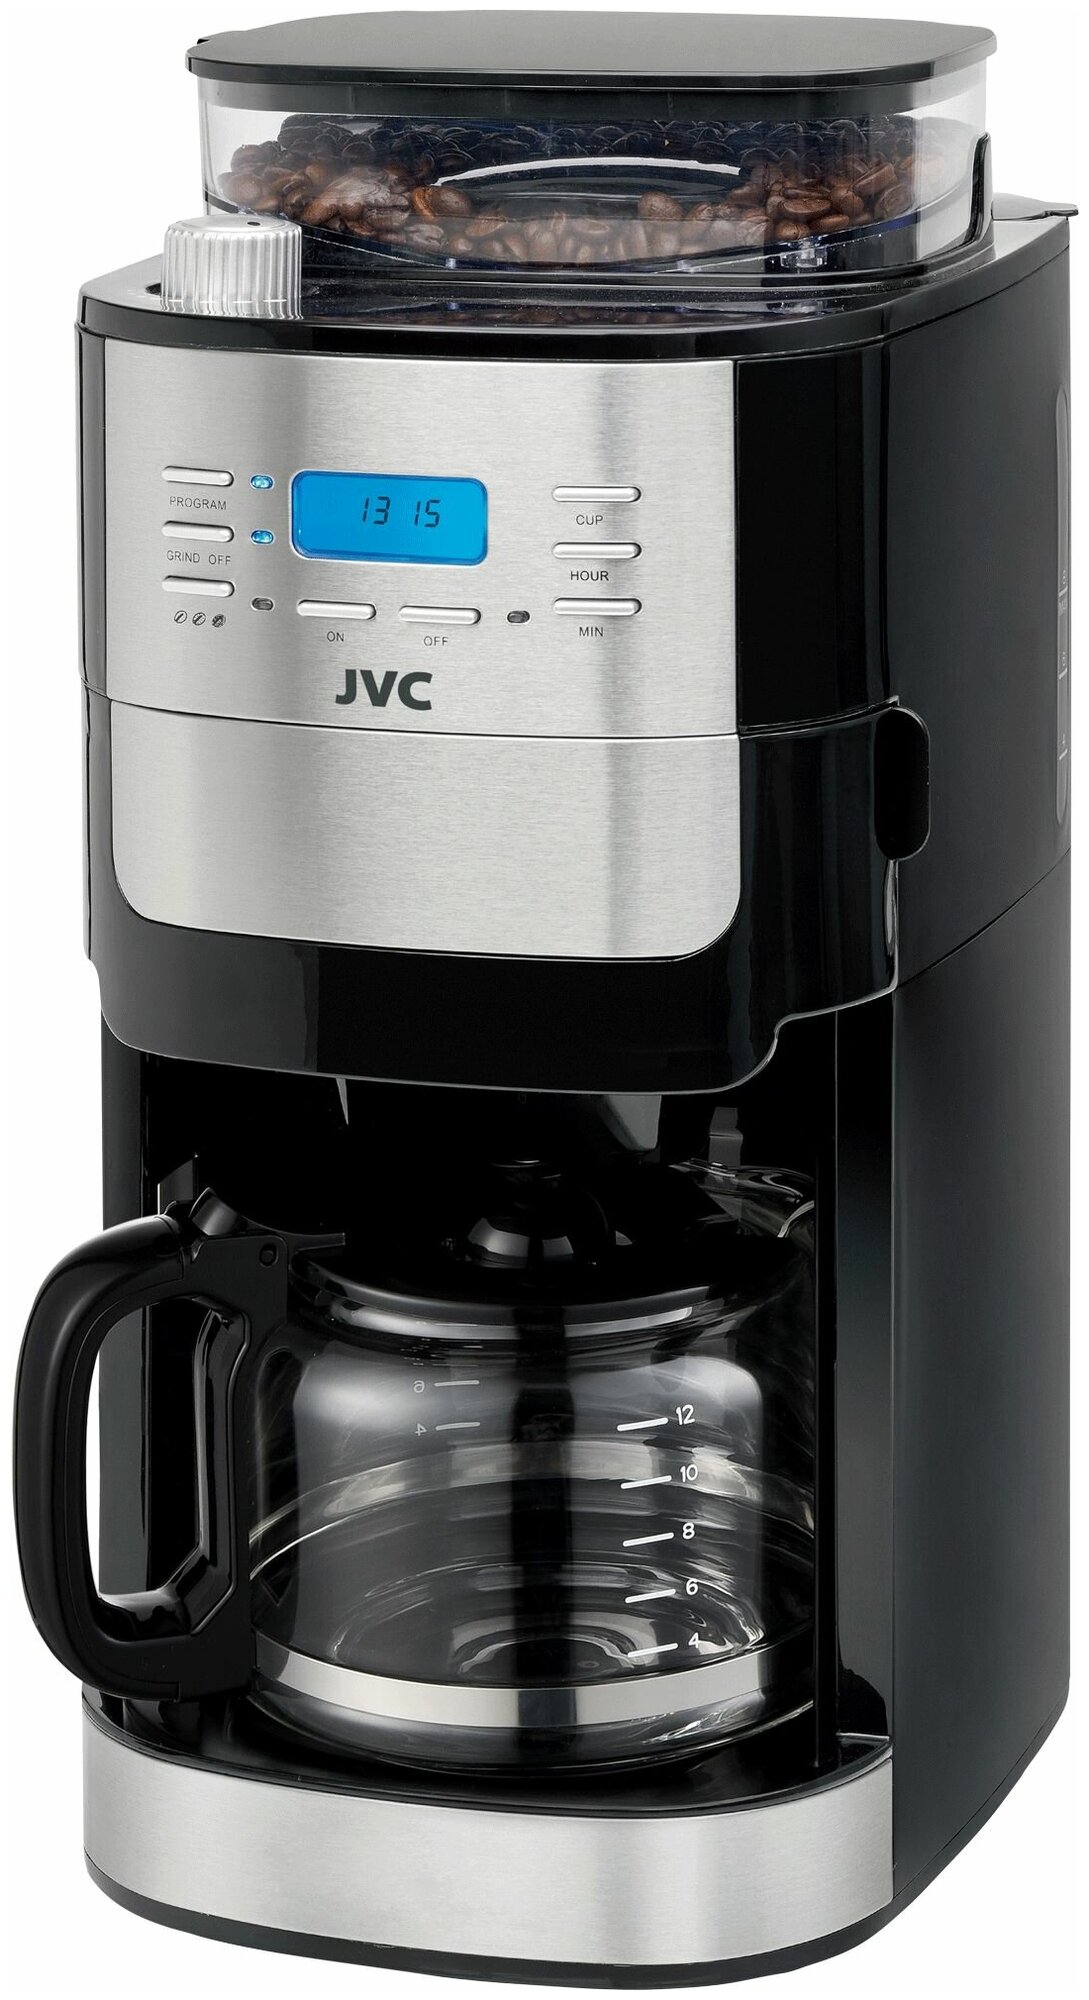 Кофеварка капельная JVC со встроенной кофемолкой 8 уровней помола 3 уровня крепости кофе отложенный старт 24 часа поддержание тепла 1050 Вт